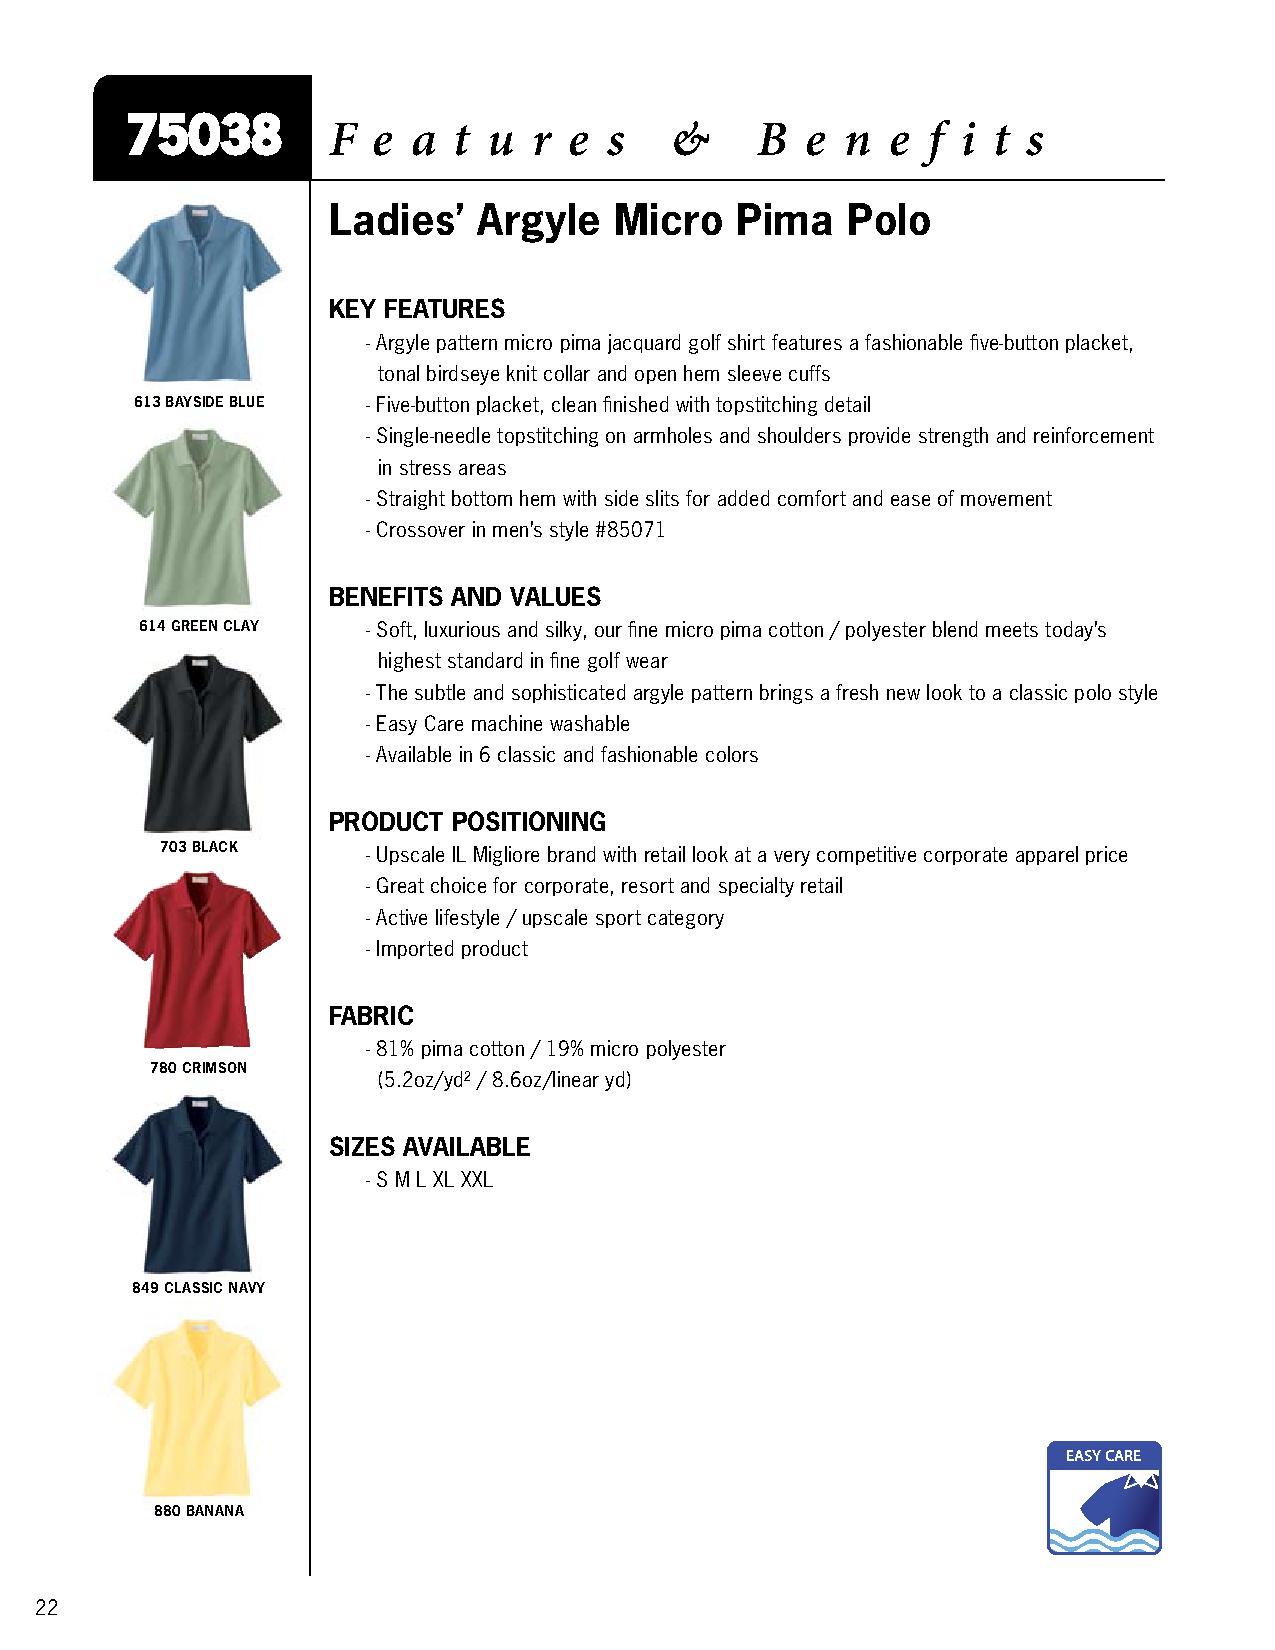 Ash City Micro pima 75038 - Ladies' Argyle Micro Pima Polo